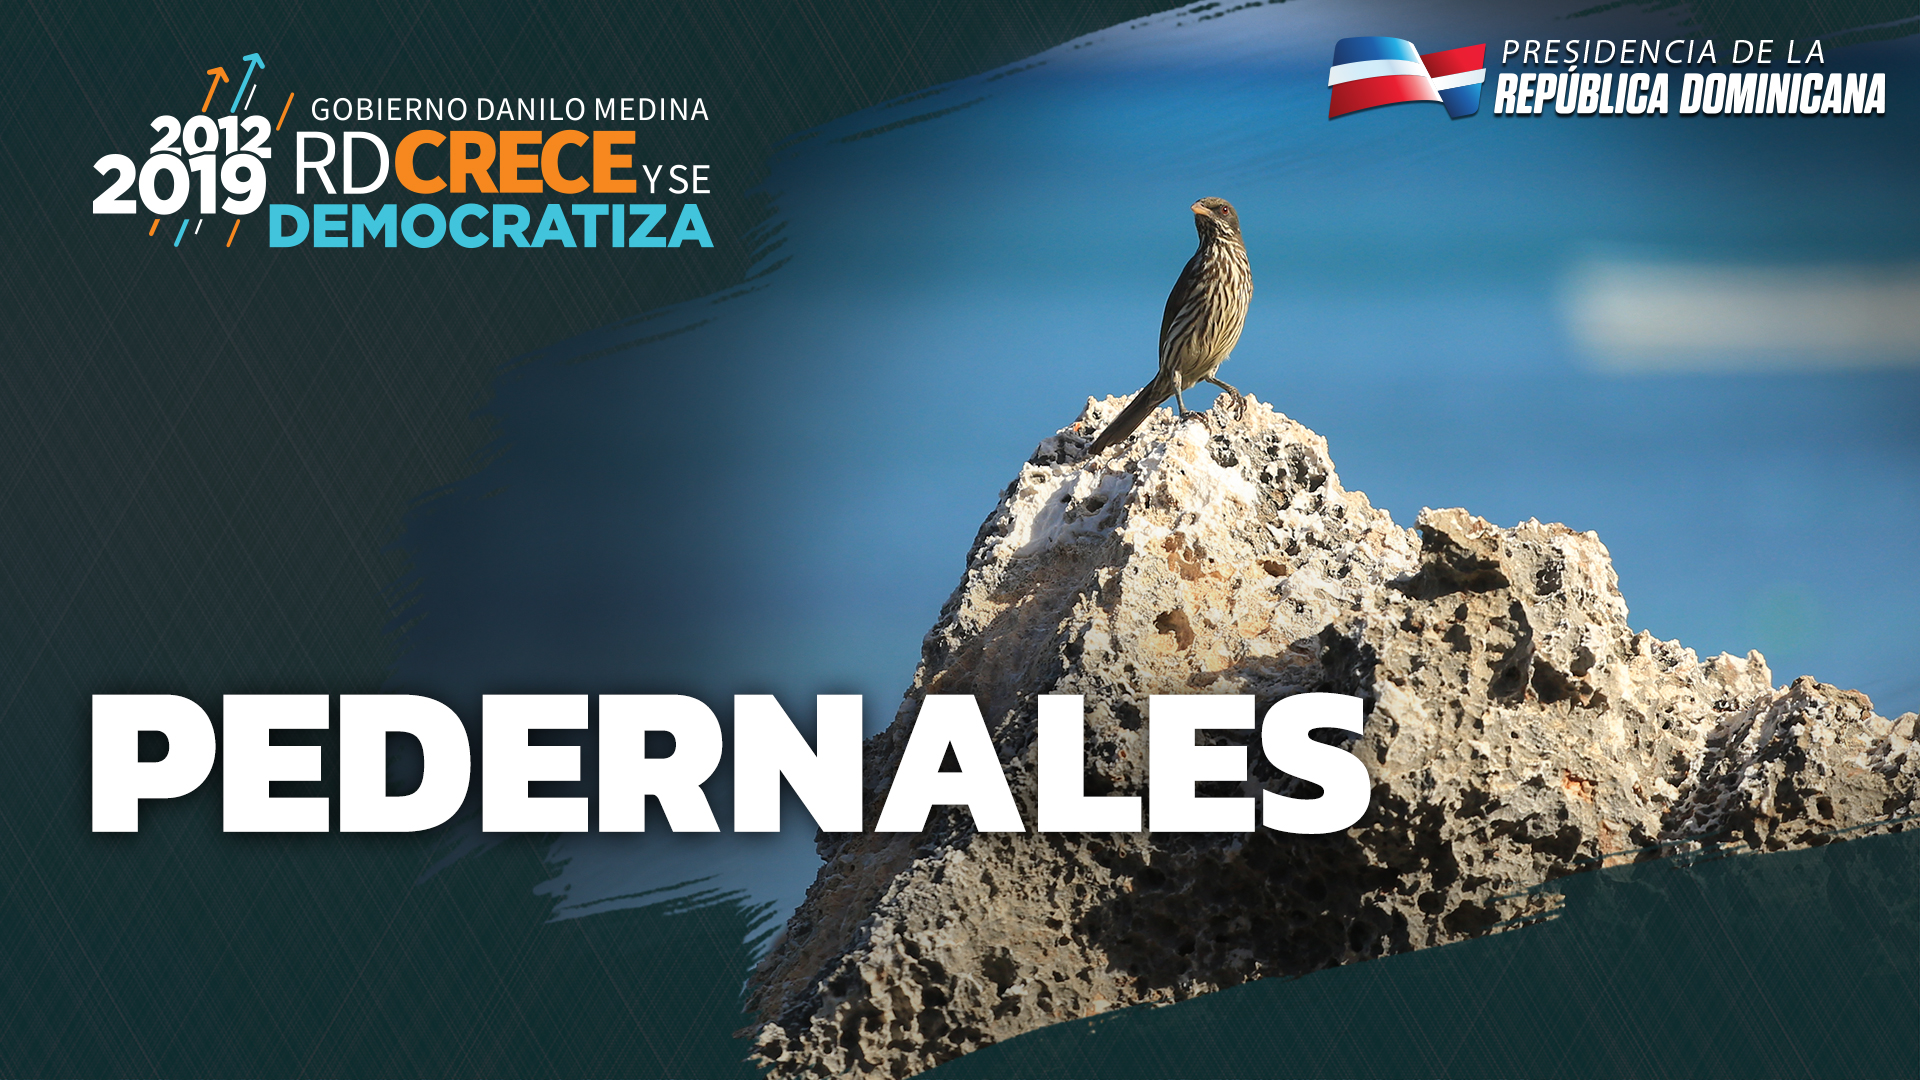 REPÚBLICA DOMINICANA: Recuperación Bahía de las Águilas y 100% estudiantes en Jornada Escolar Extendida, principales logros de Pedernales en período 2012-2019